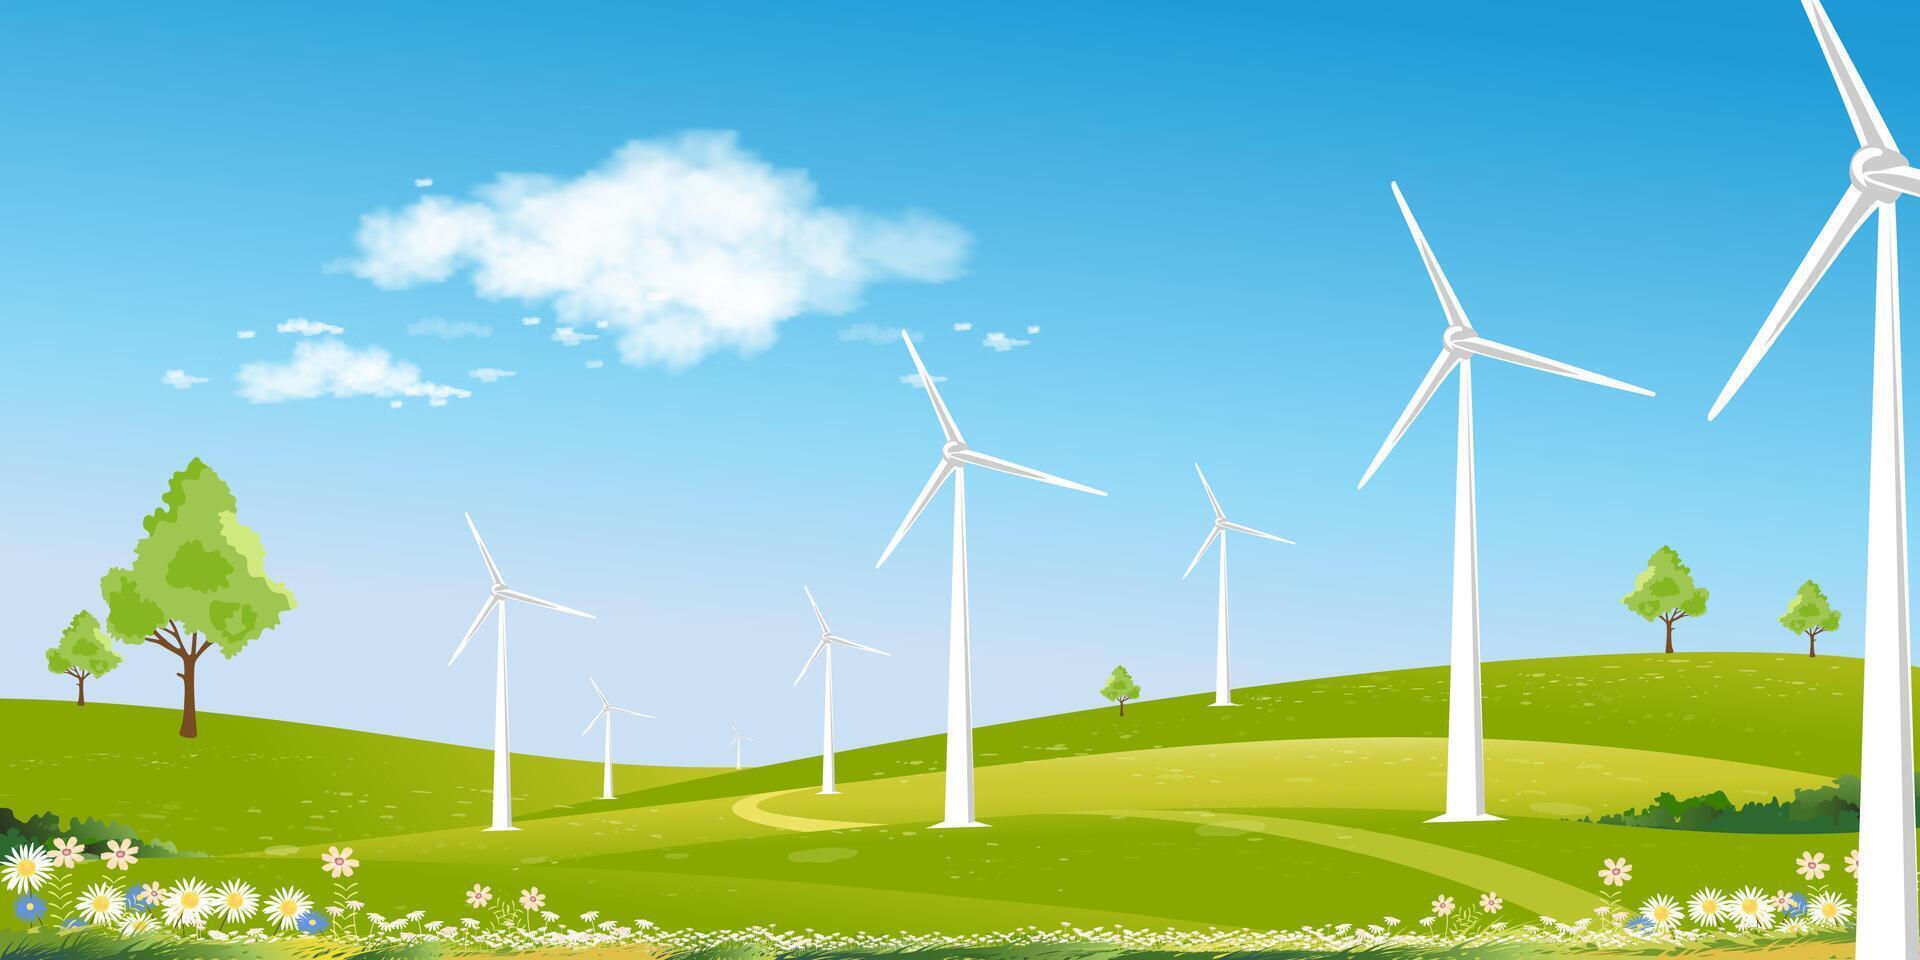 ambiental fondo primavera paisaje verde campo con molino en montaña, azul cielo, nube, vector rural con solar panel viento turbinas instalado como renovable estación energía fuentes para electricidad